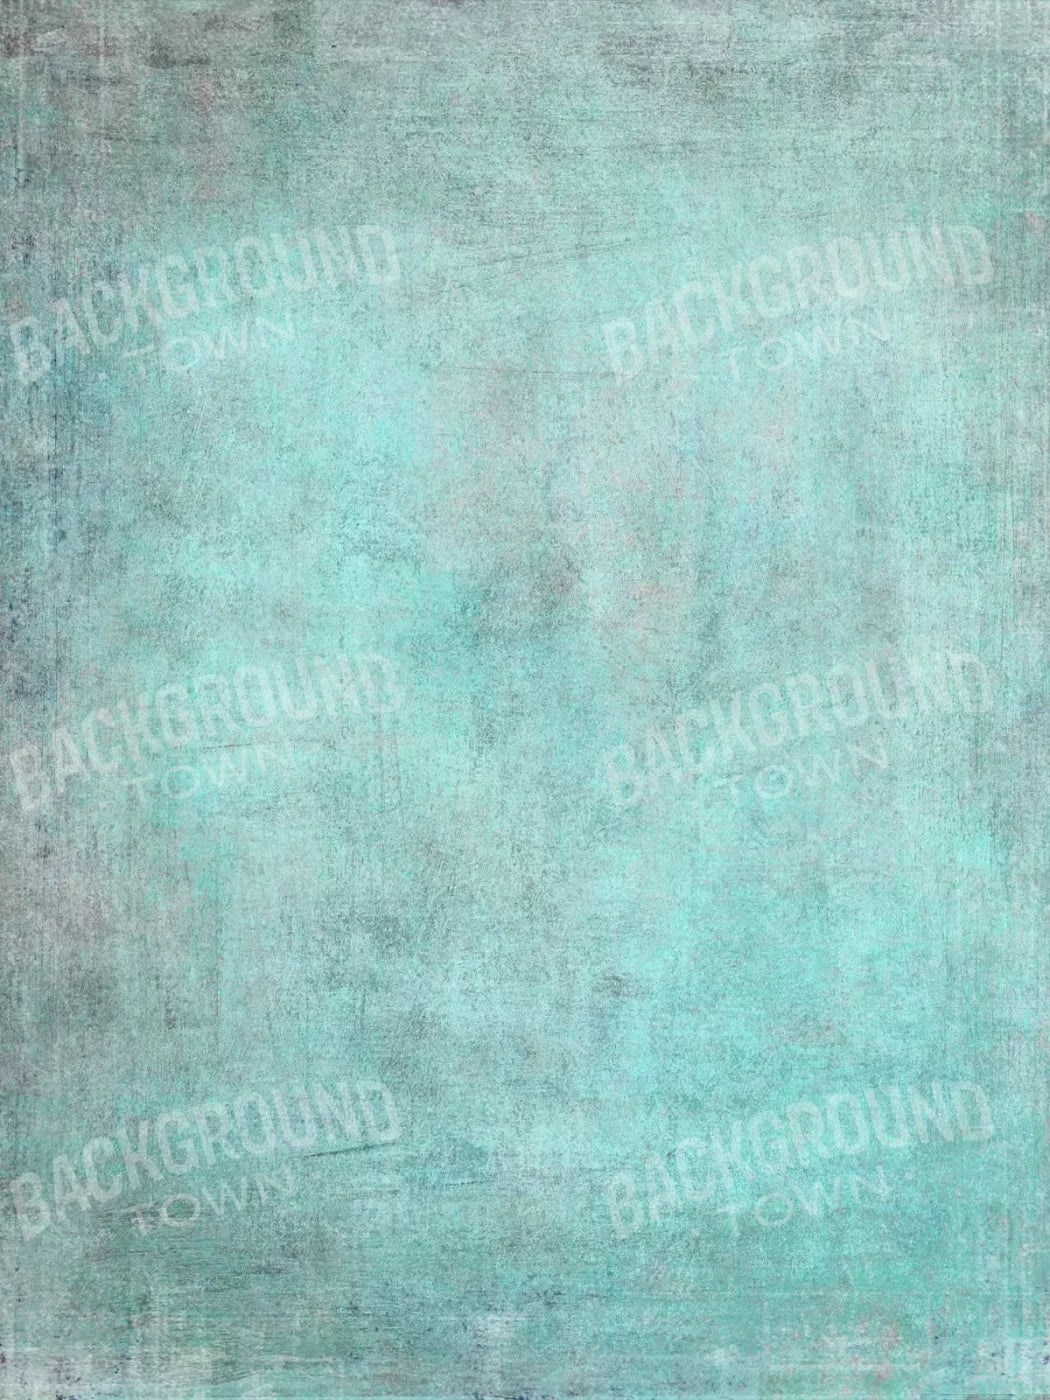 Grunge Seafoam 5X7 Ultracloth ( 60 X 84 Inch ) Backdrop